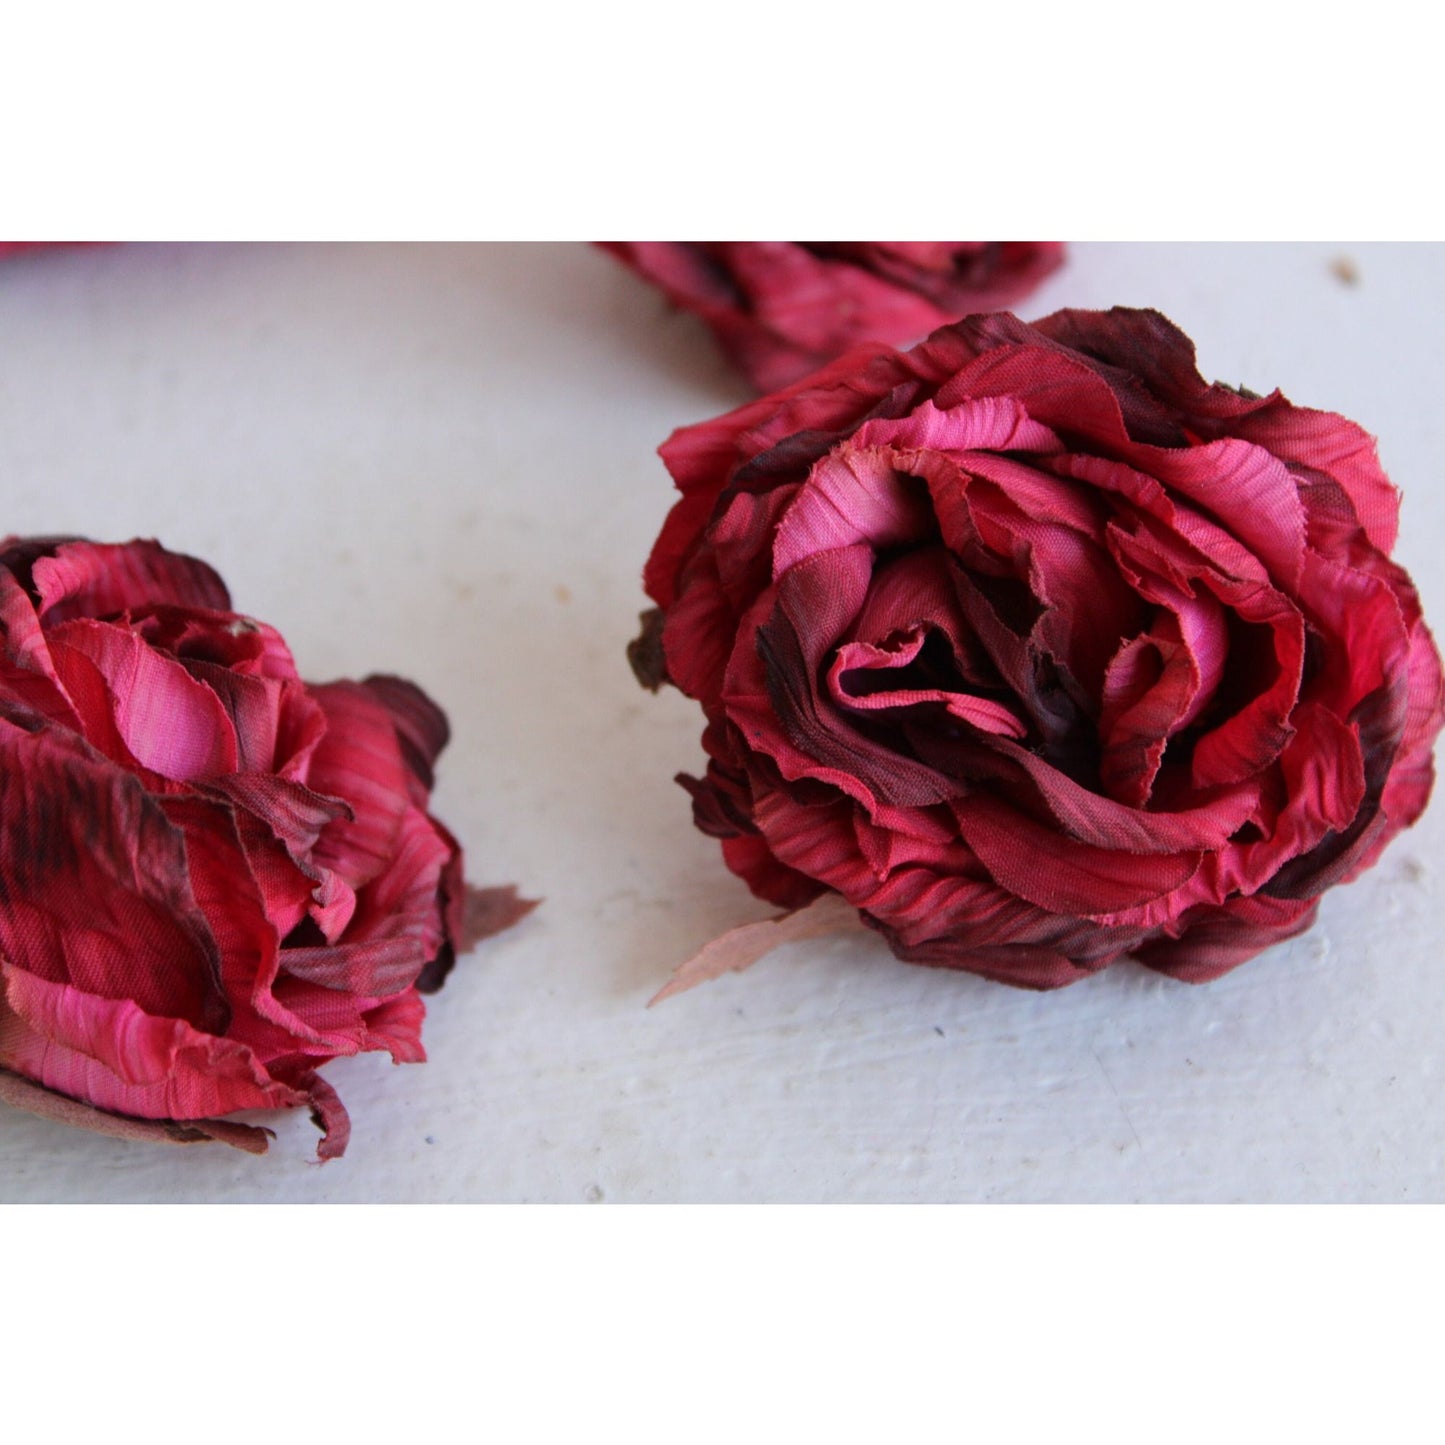 Vintage Silk Rose Flowers, Half Dozen